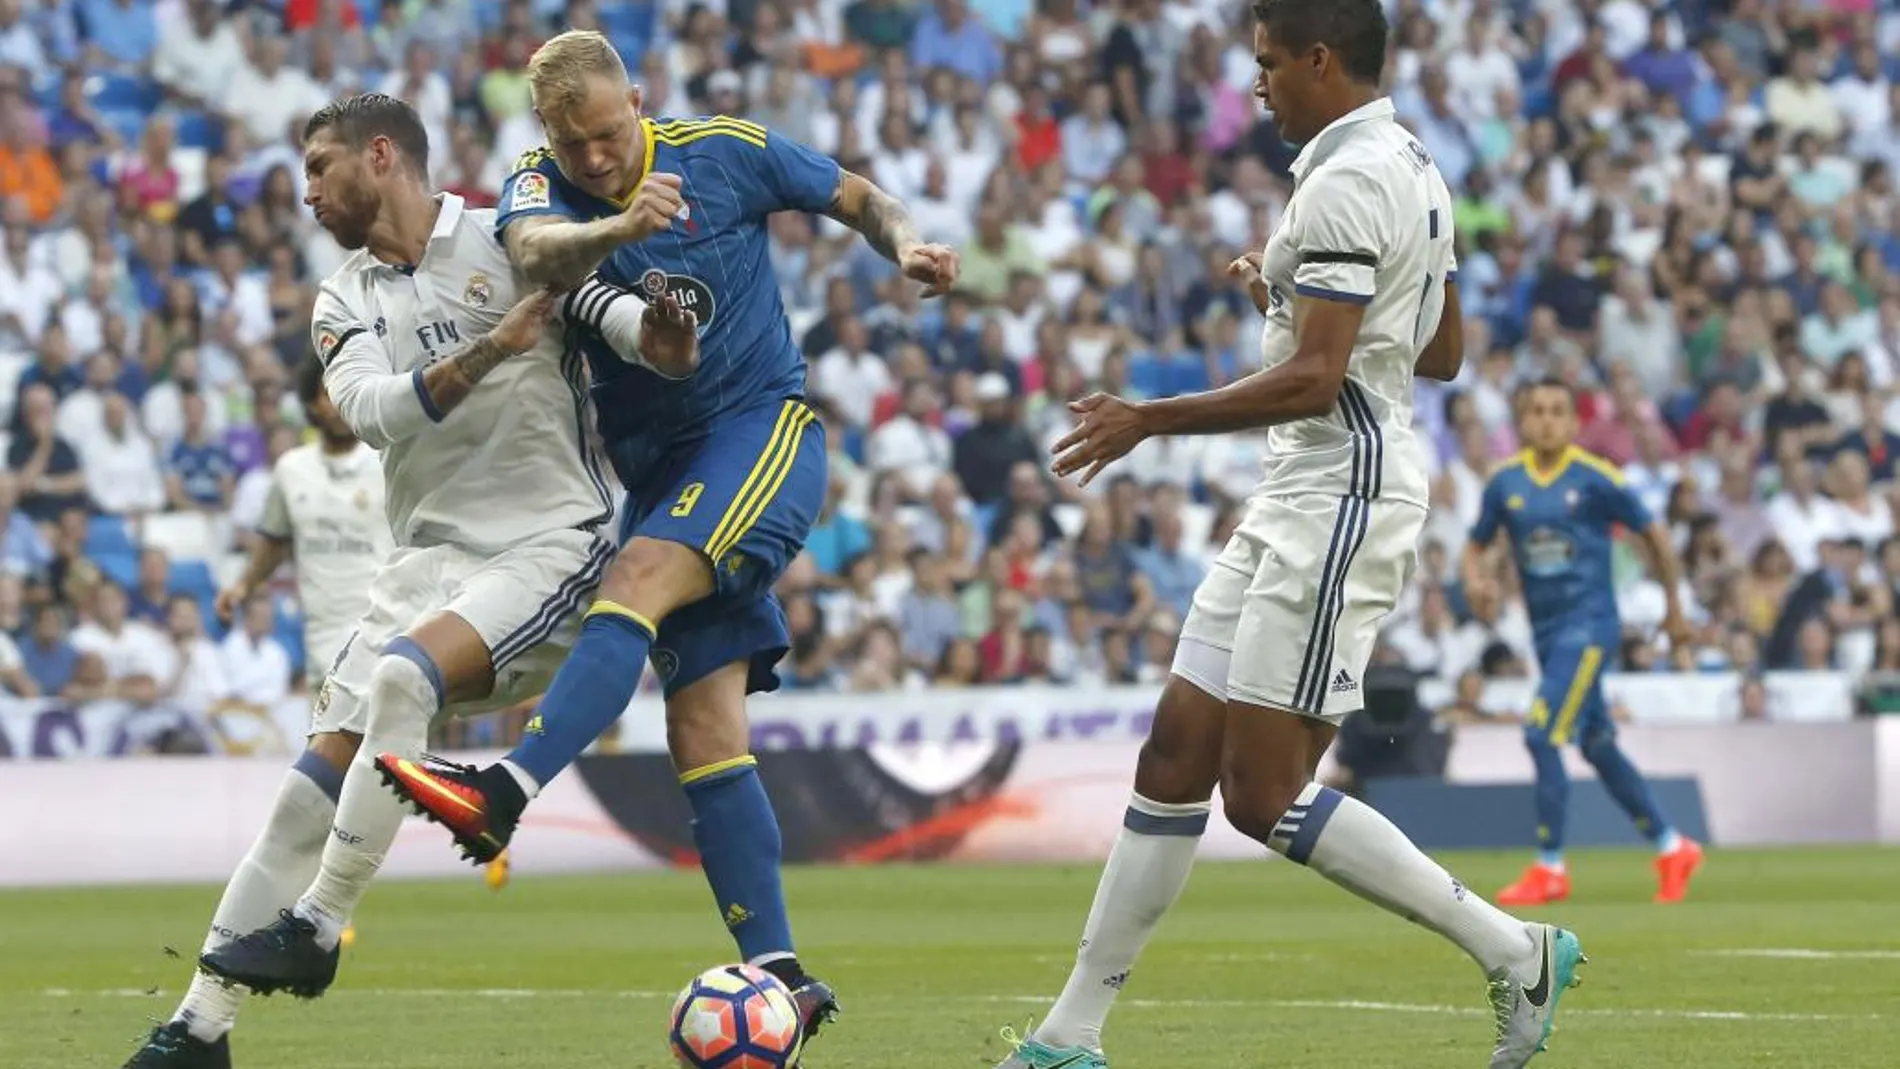 El delantero sueco del Celta de Vigo, John Guidetti, intenta golpear el balón ante los defensores del Real Madrid, Sergio Ramos y Varane